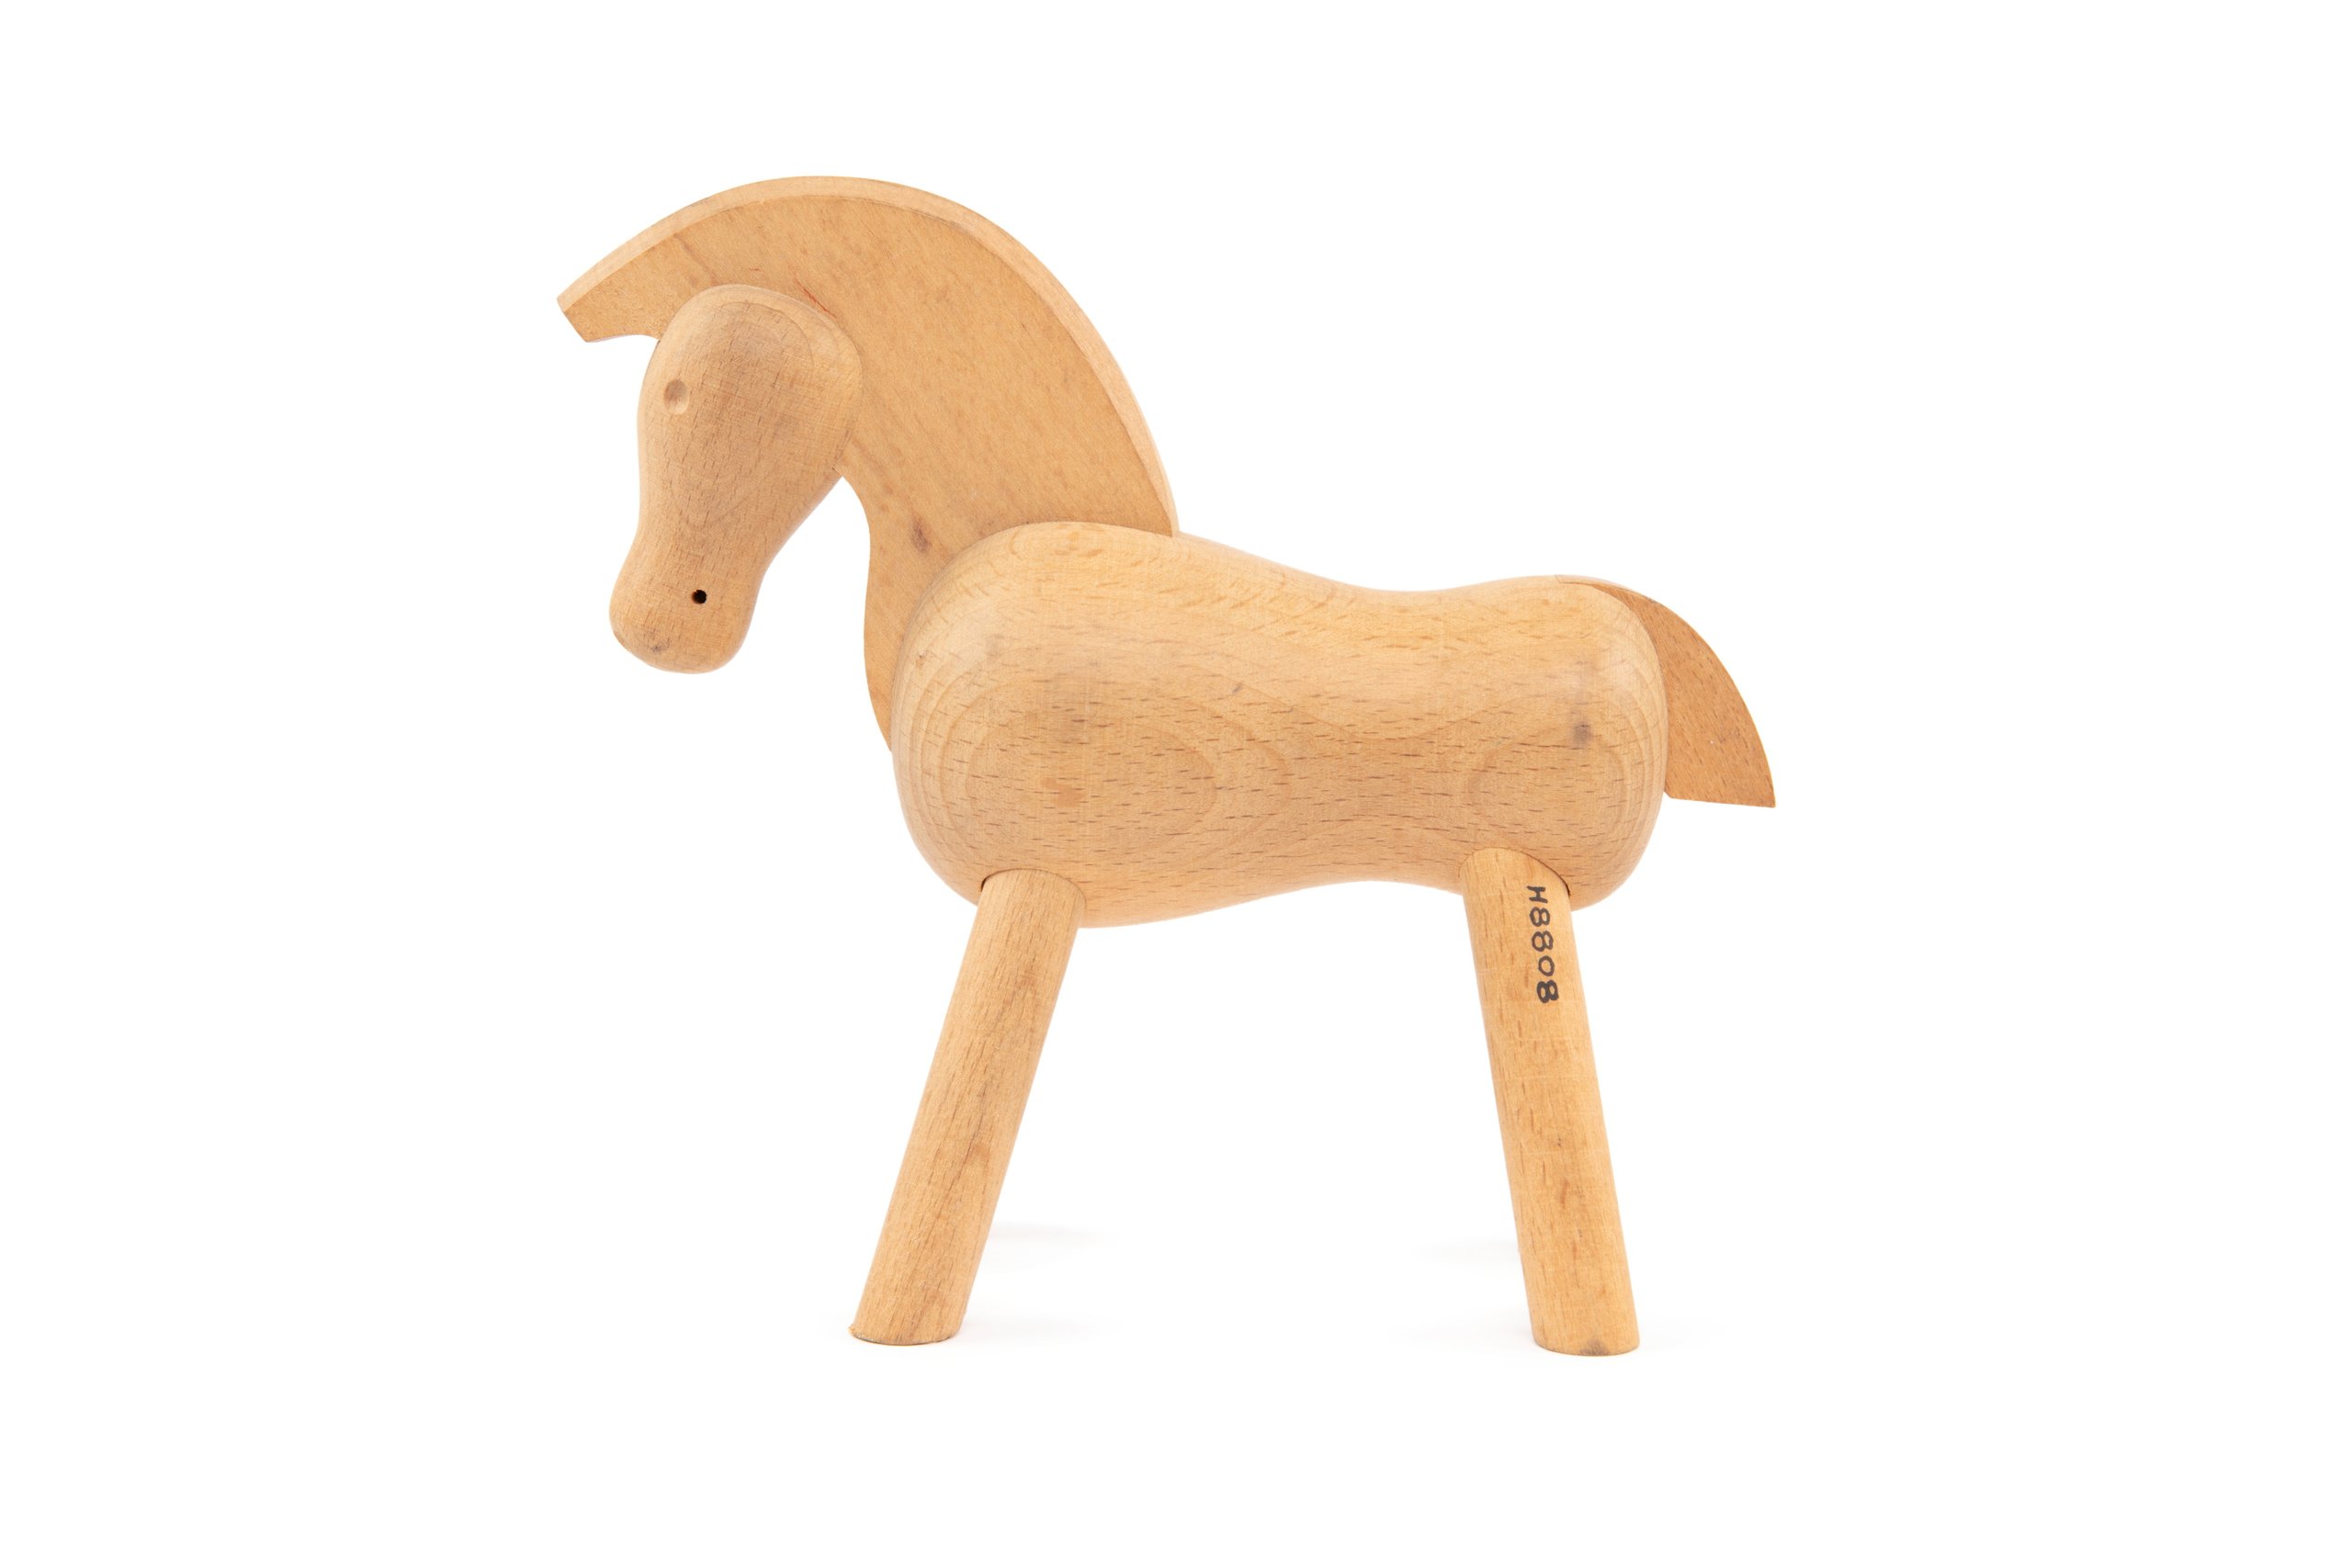 Toy pony designed by Kay Bojesen